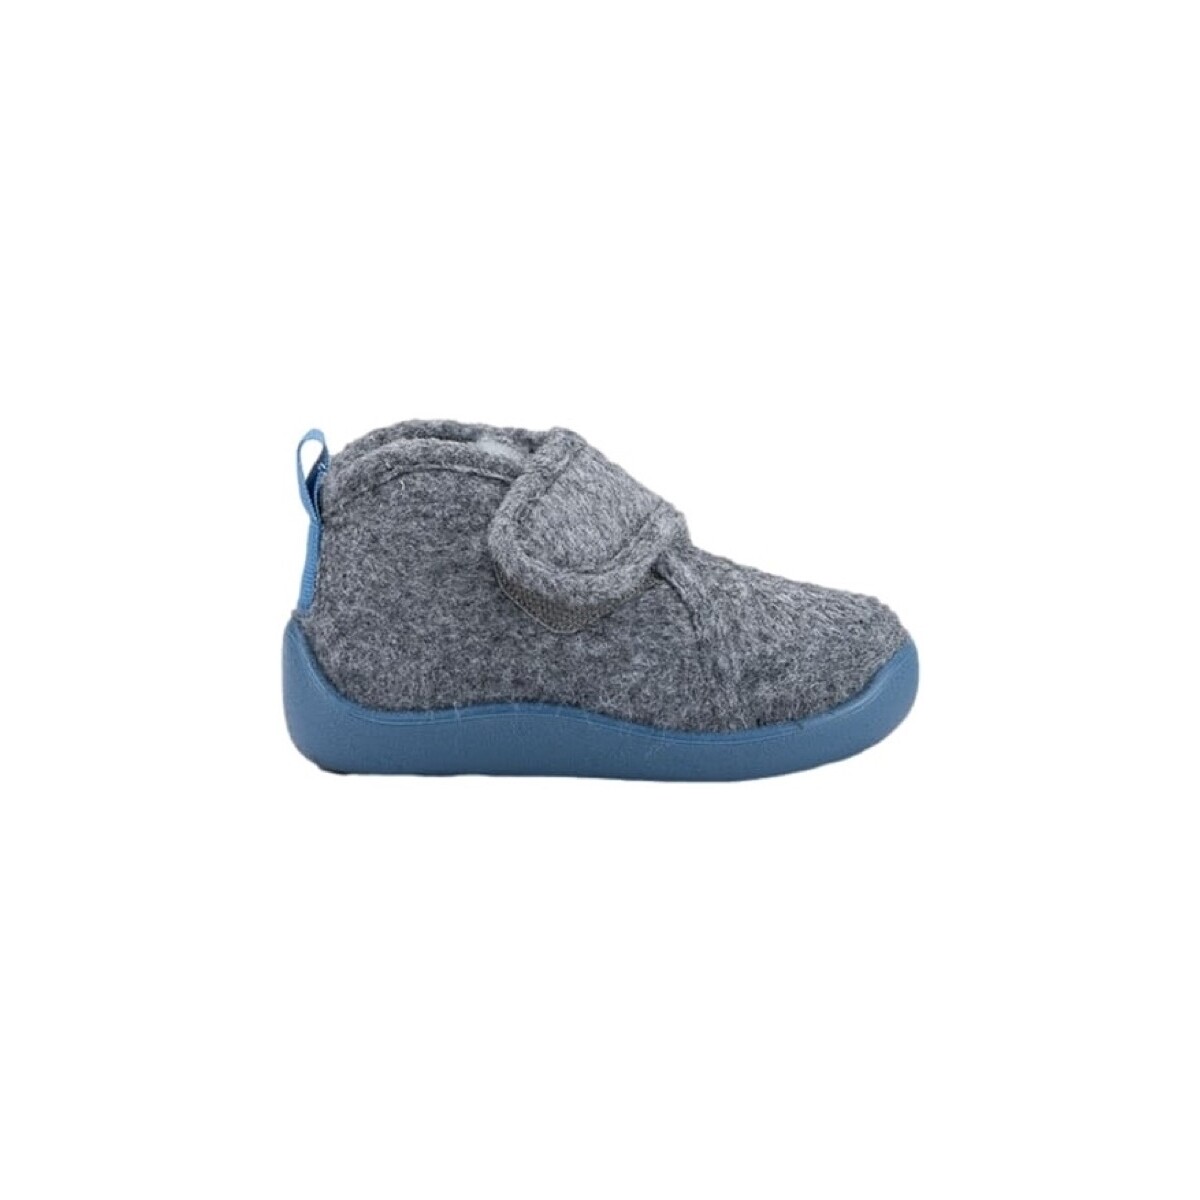 Schuhe Kinder Babyschuhe IGOR Comfi Colores - Gris/Blue Grau